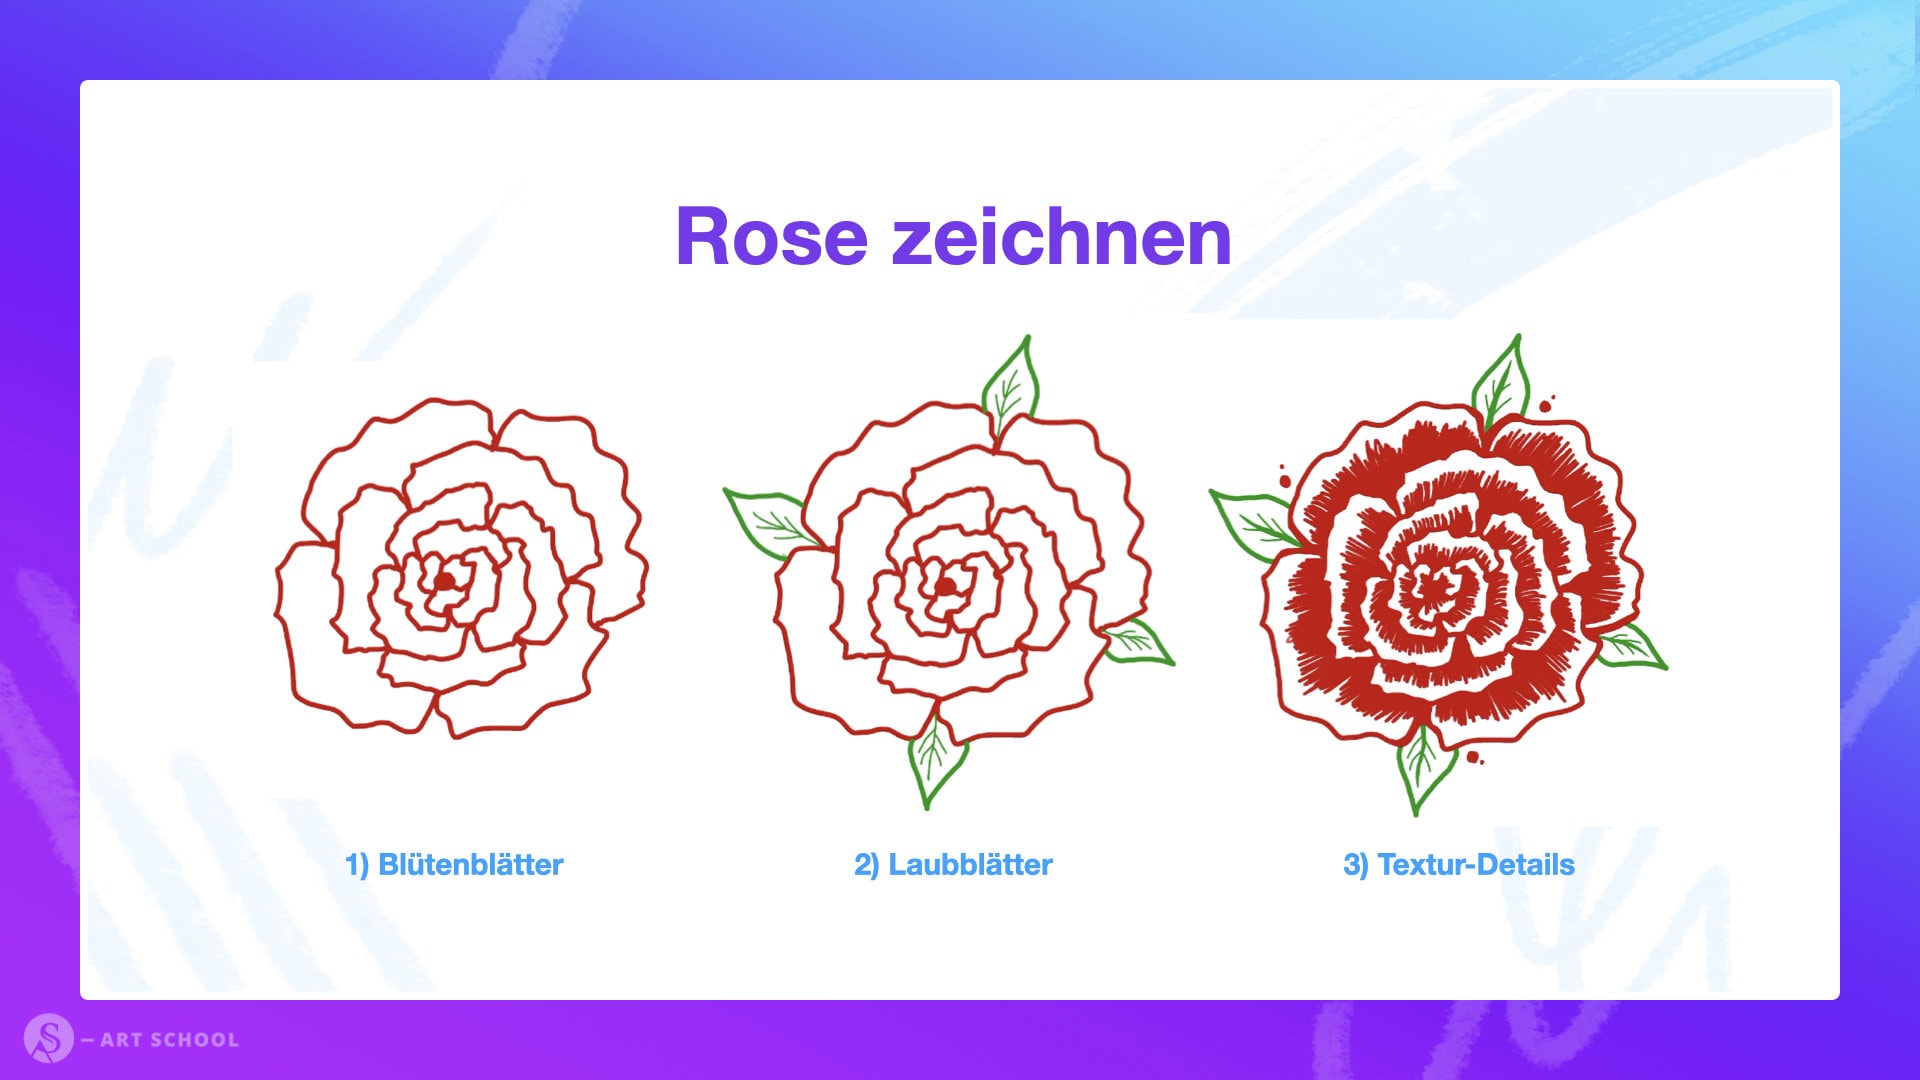 Rose zeichnen - Zusammenfassung